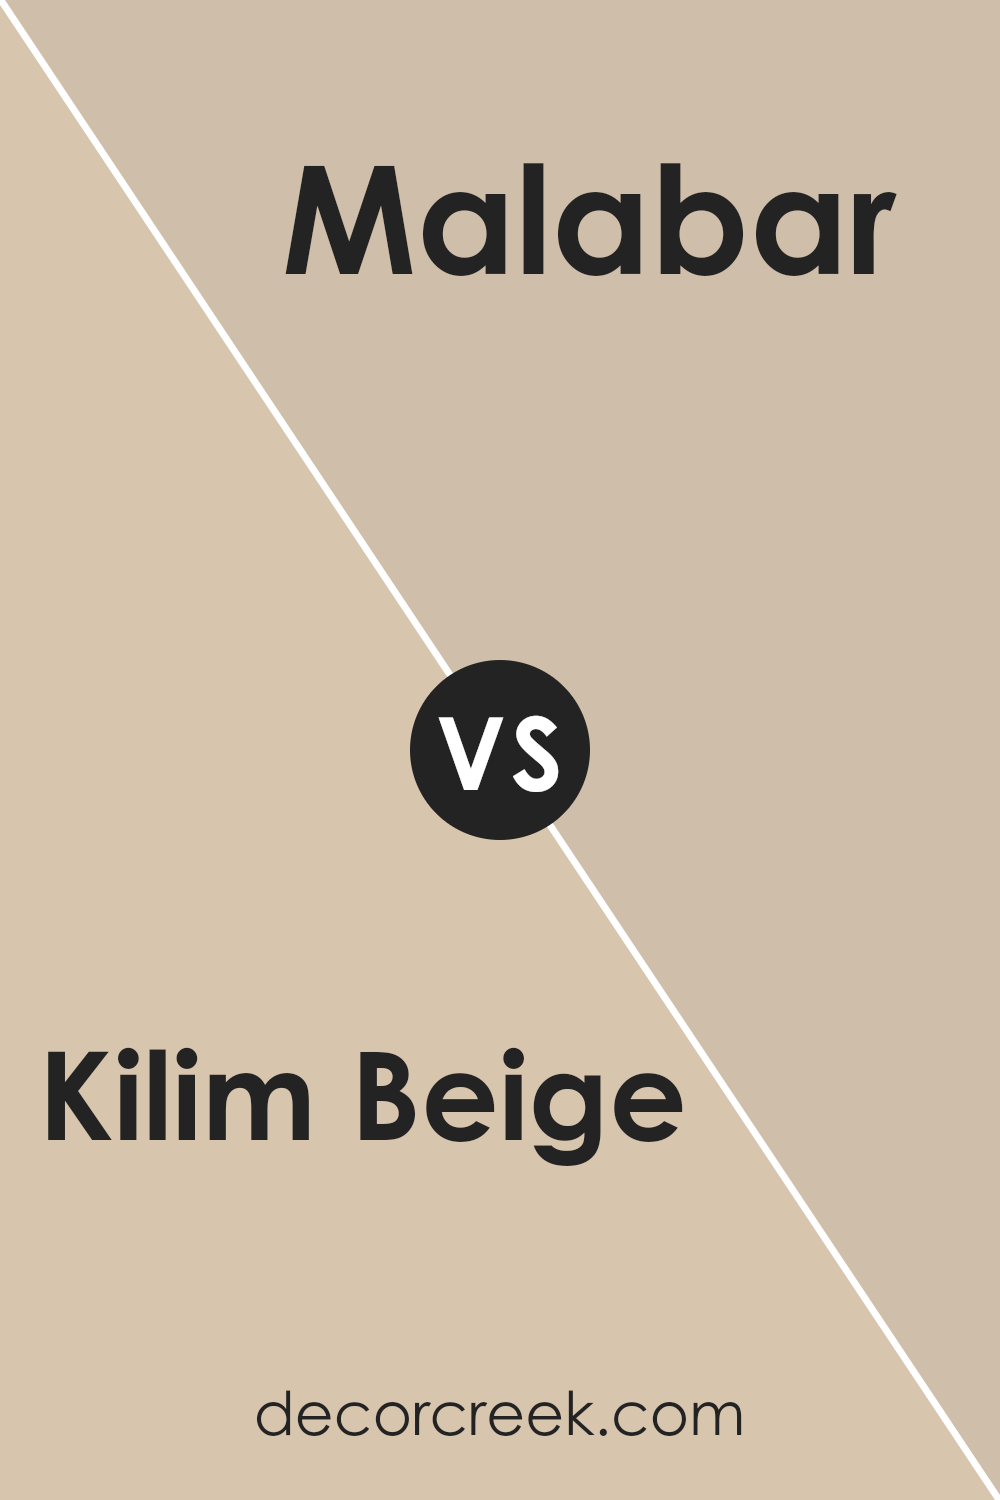 kilim_beige_sw_6106_vs_malabar_sw_9110